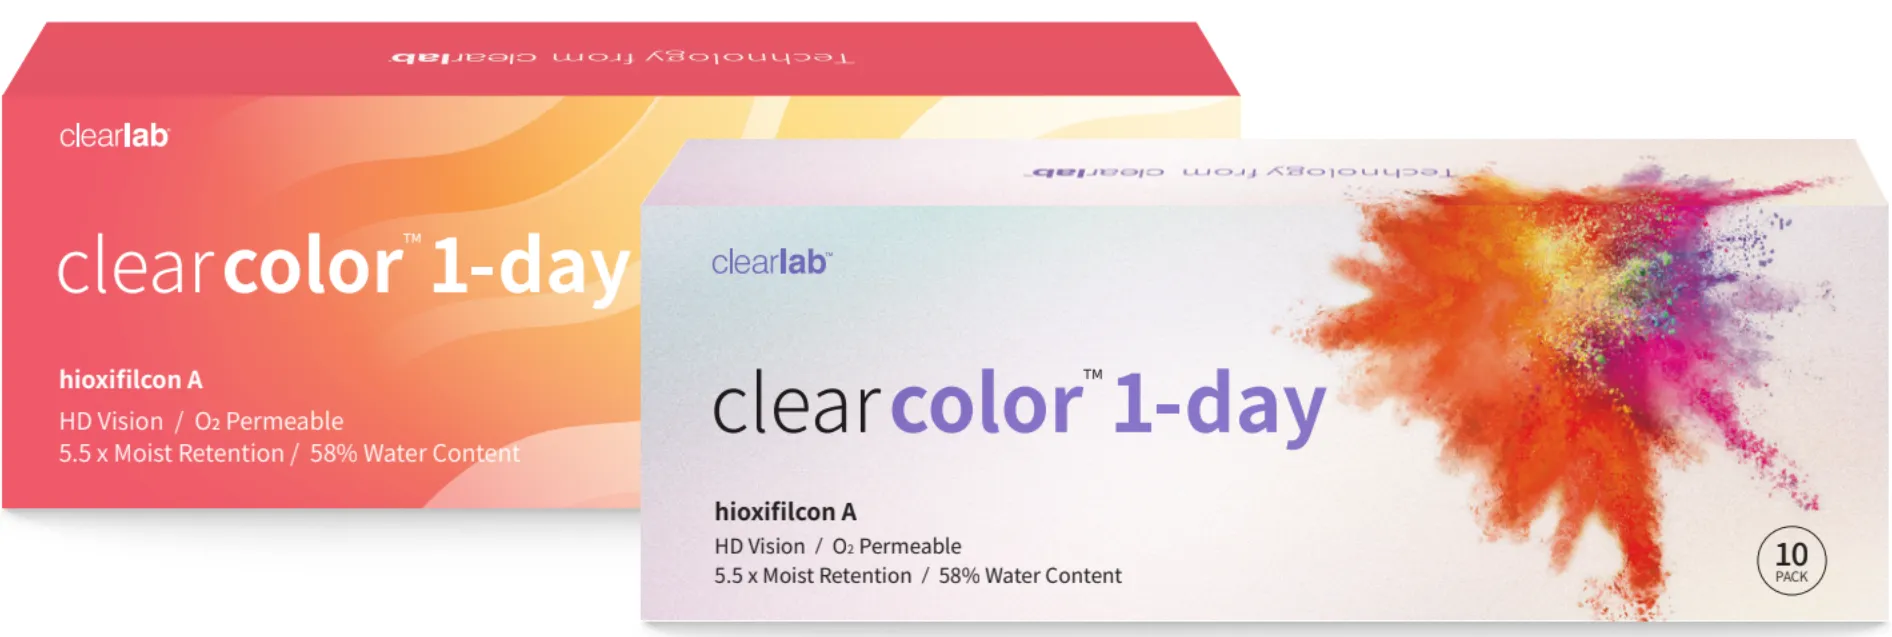 ClearLab ClearColor 1-Day kolorowe soczewki kontaktowe błękitne 0.00,  10 szt.